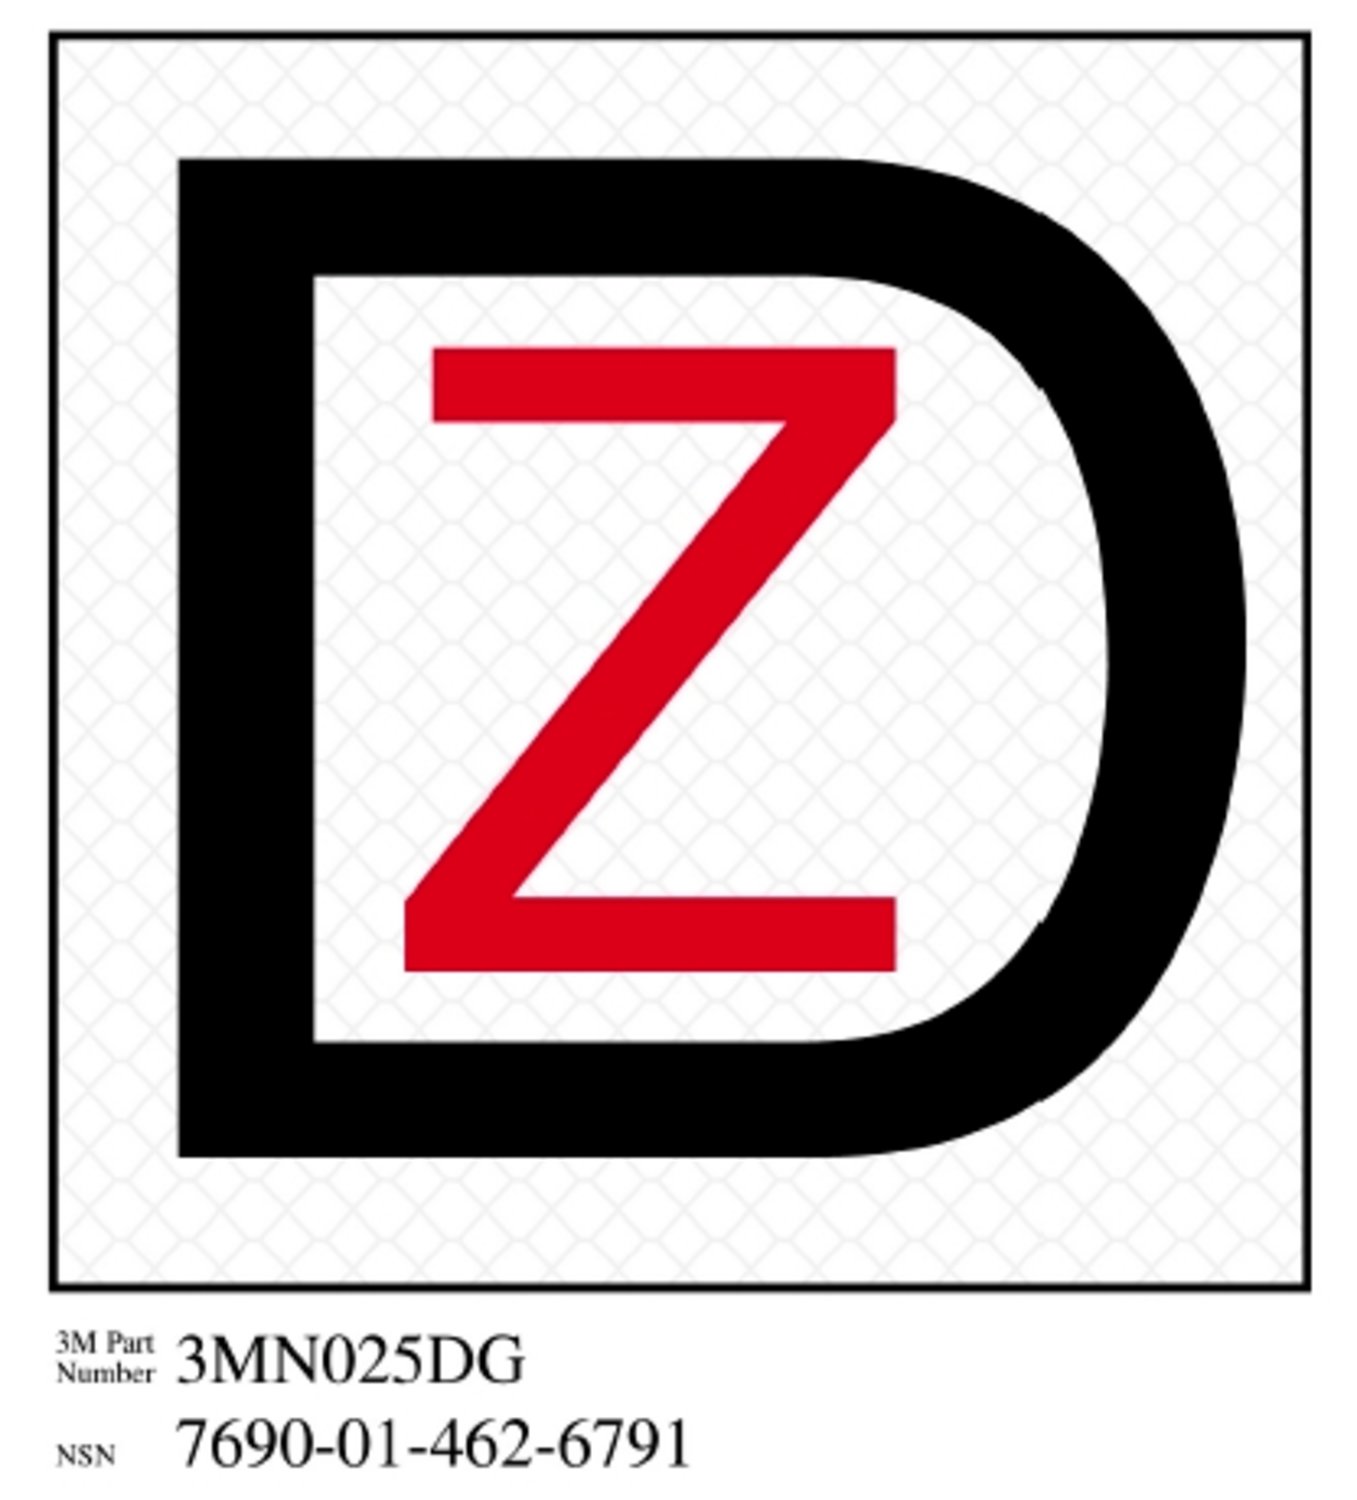 7010388575 - 3M Diamond Grade Damage Control Sign 3MN025DG, "Dk Ship Zebra", 4 in x
4 in, 10/Package